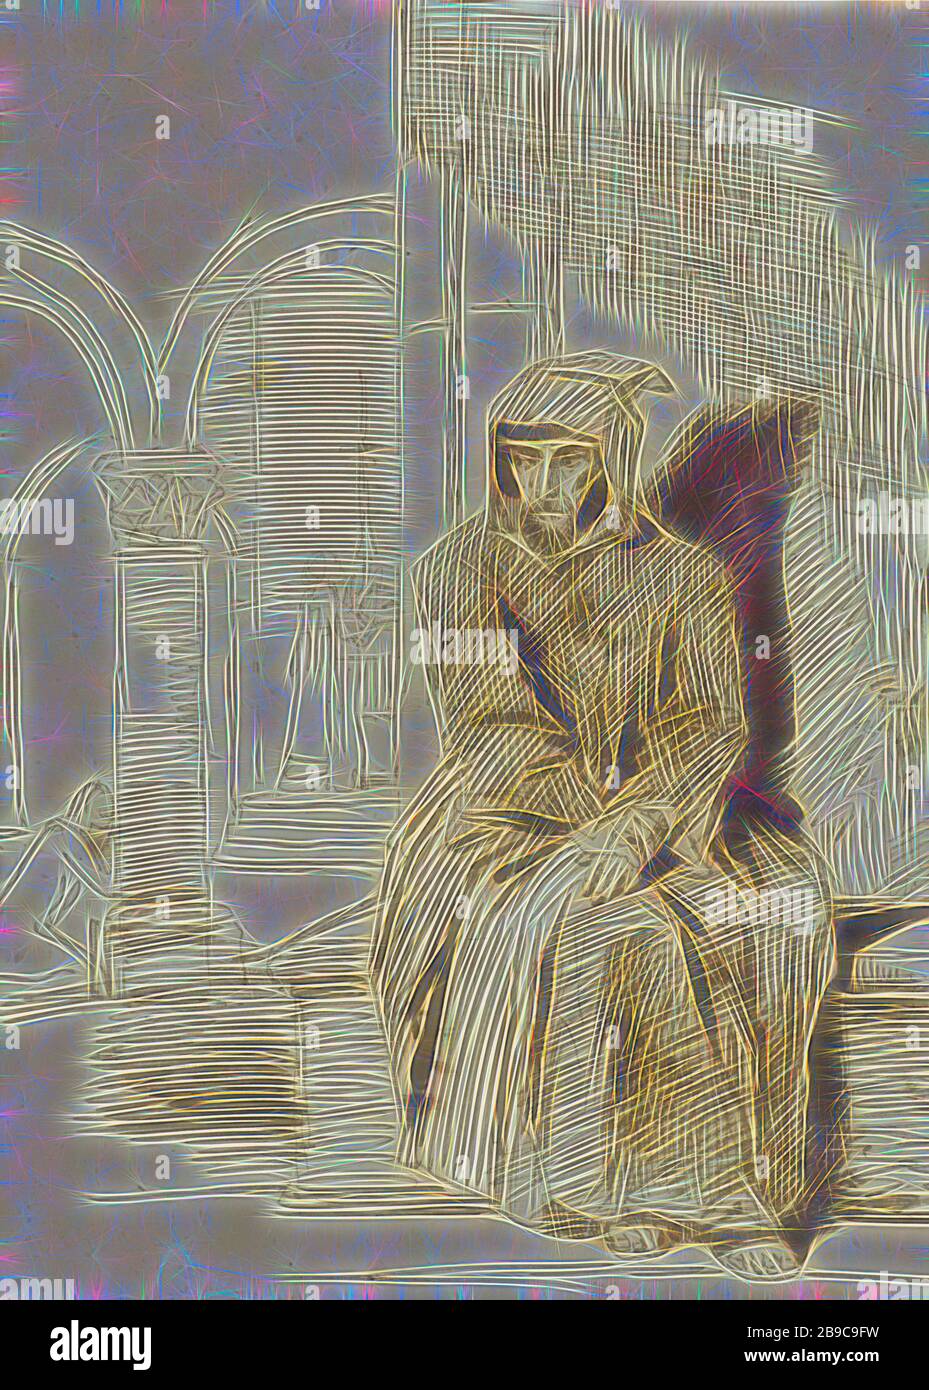 Monje sentado, en la contemplación, mientras la misa se celebra en el  fondo, Louis Boulanger, 1816 - 1867, papel, tinta, pincel, h 262 mm × w 190  mm, Reimaginado por Gibon, diseño